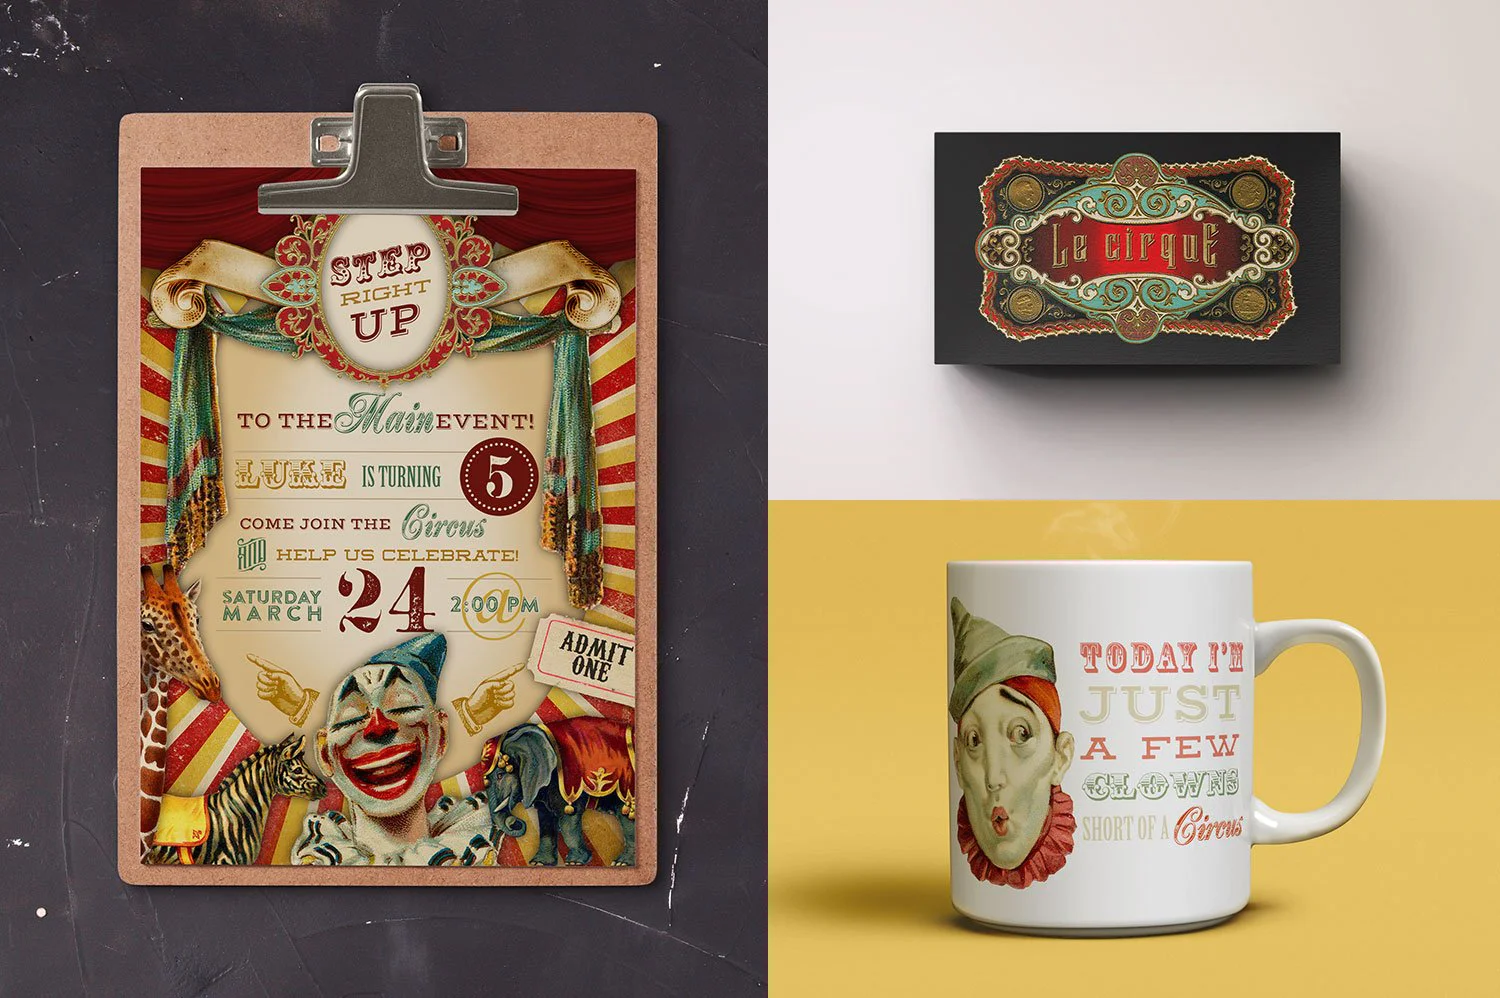 3466 复古老式马戏团小丑动物手绘插画插图拼贴png免抠图片国外设计素材 Vintage Circus Graphics